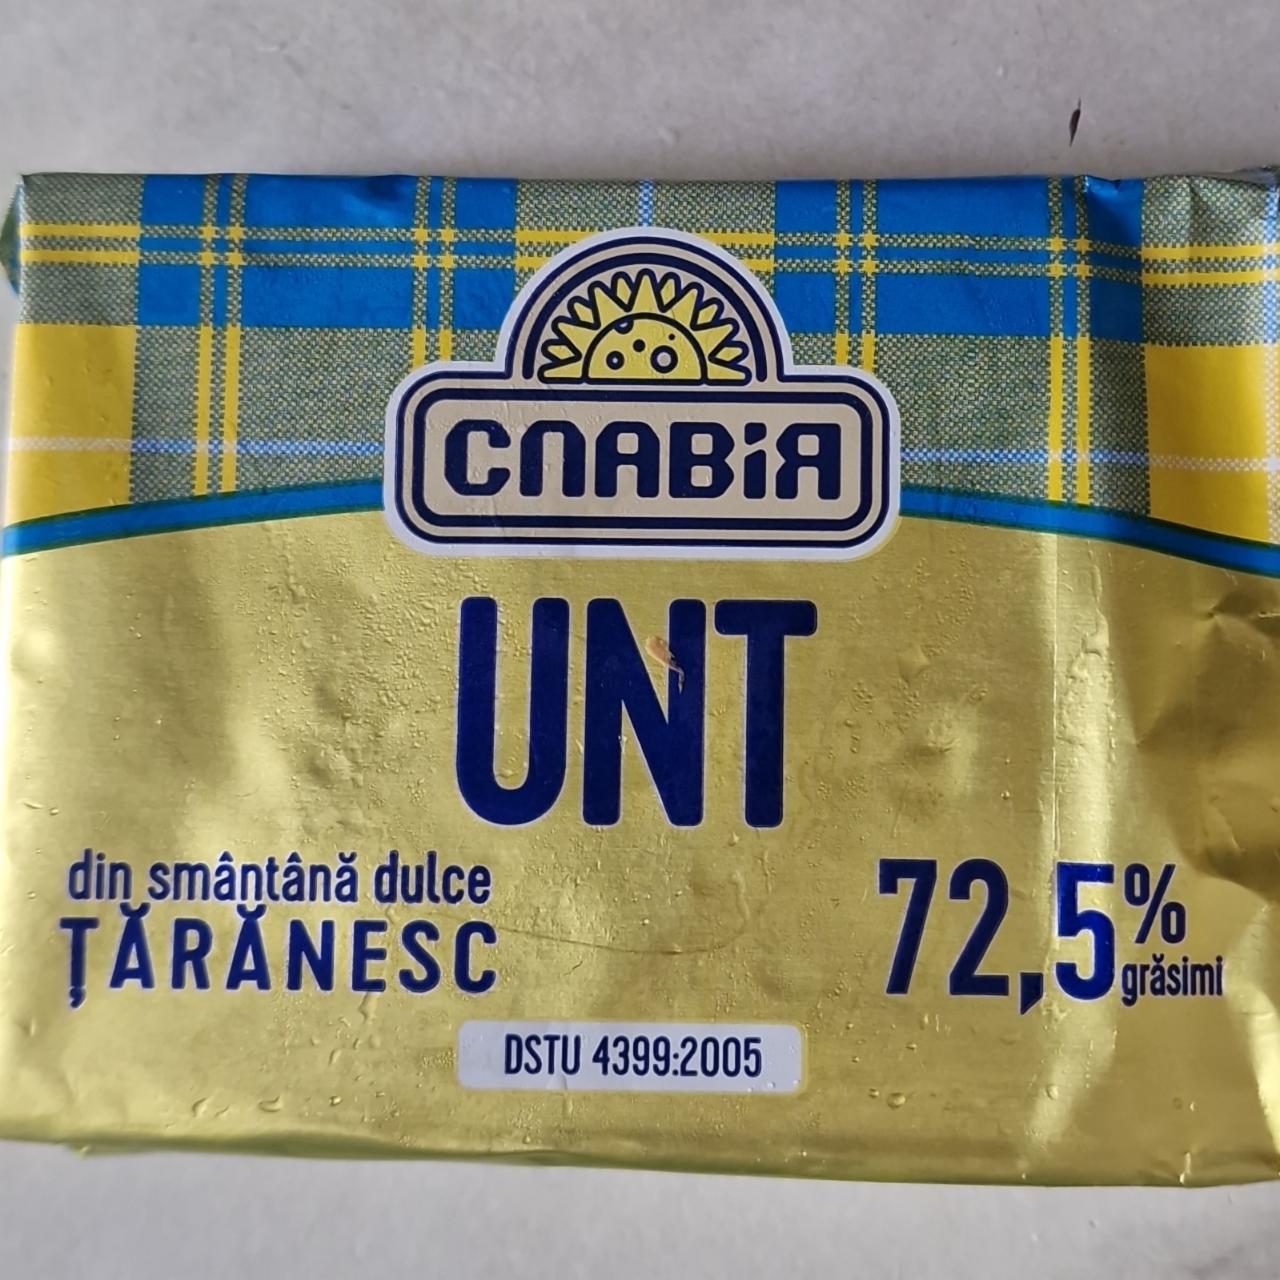 Фото - Unt țărănesc масло сливочное 72.5% Славія